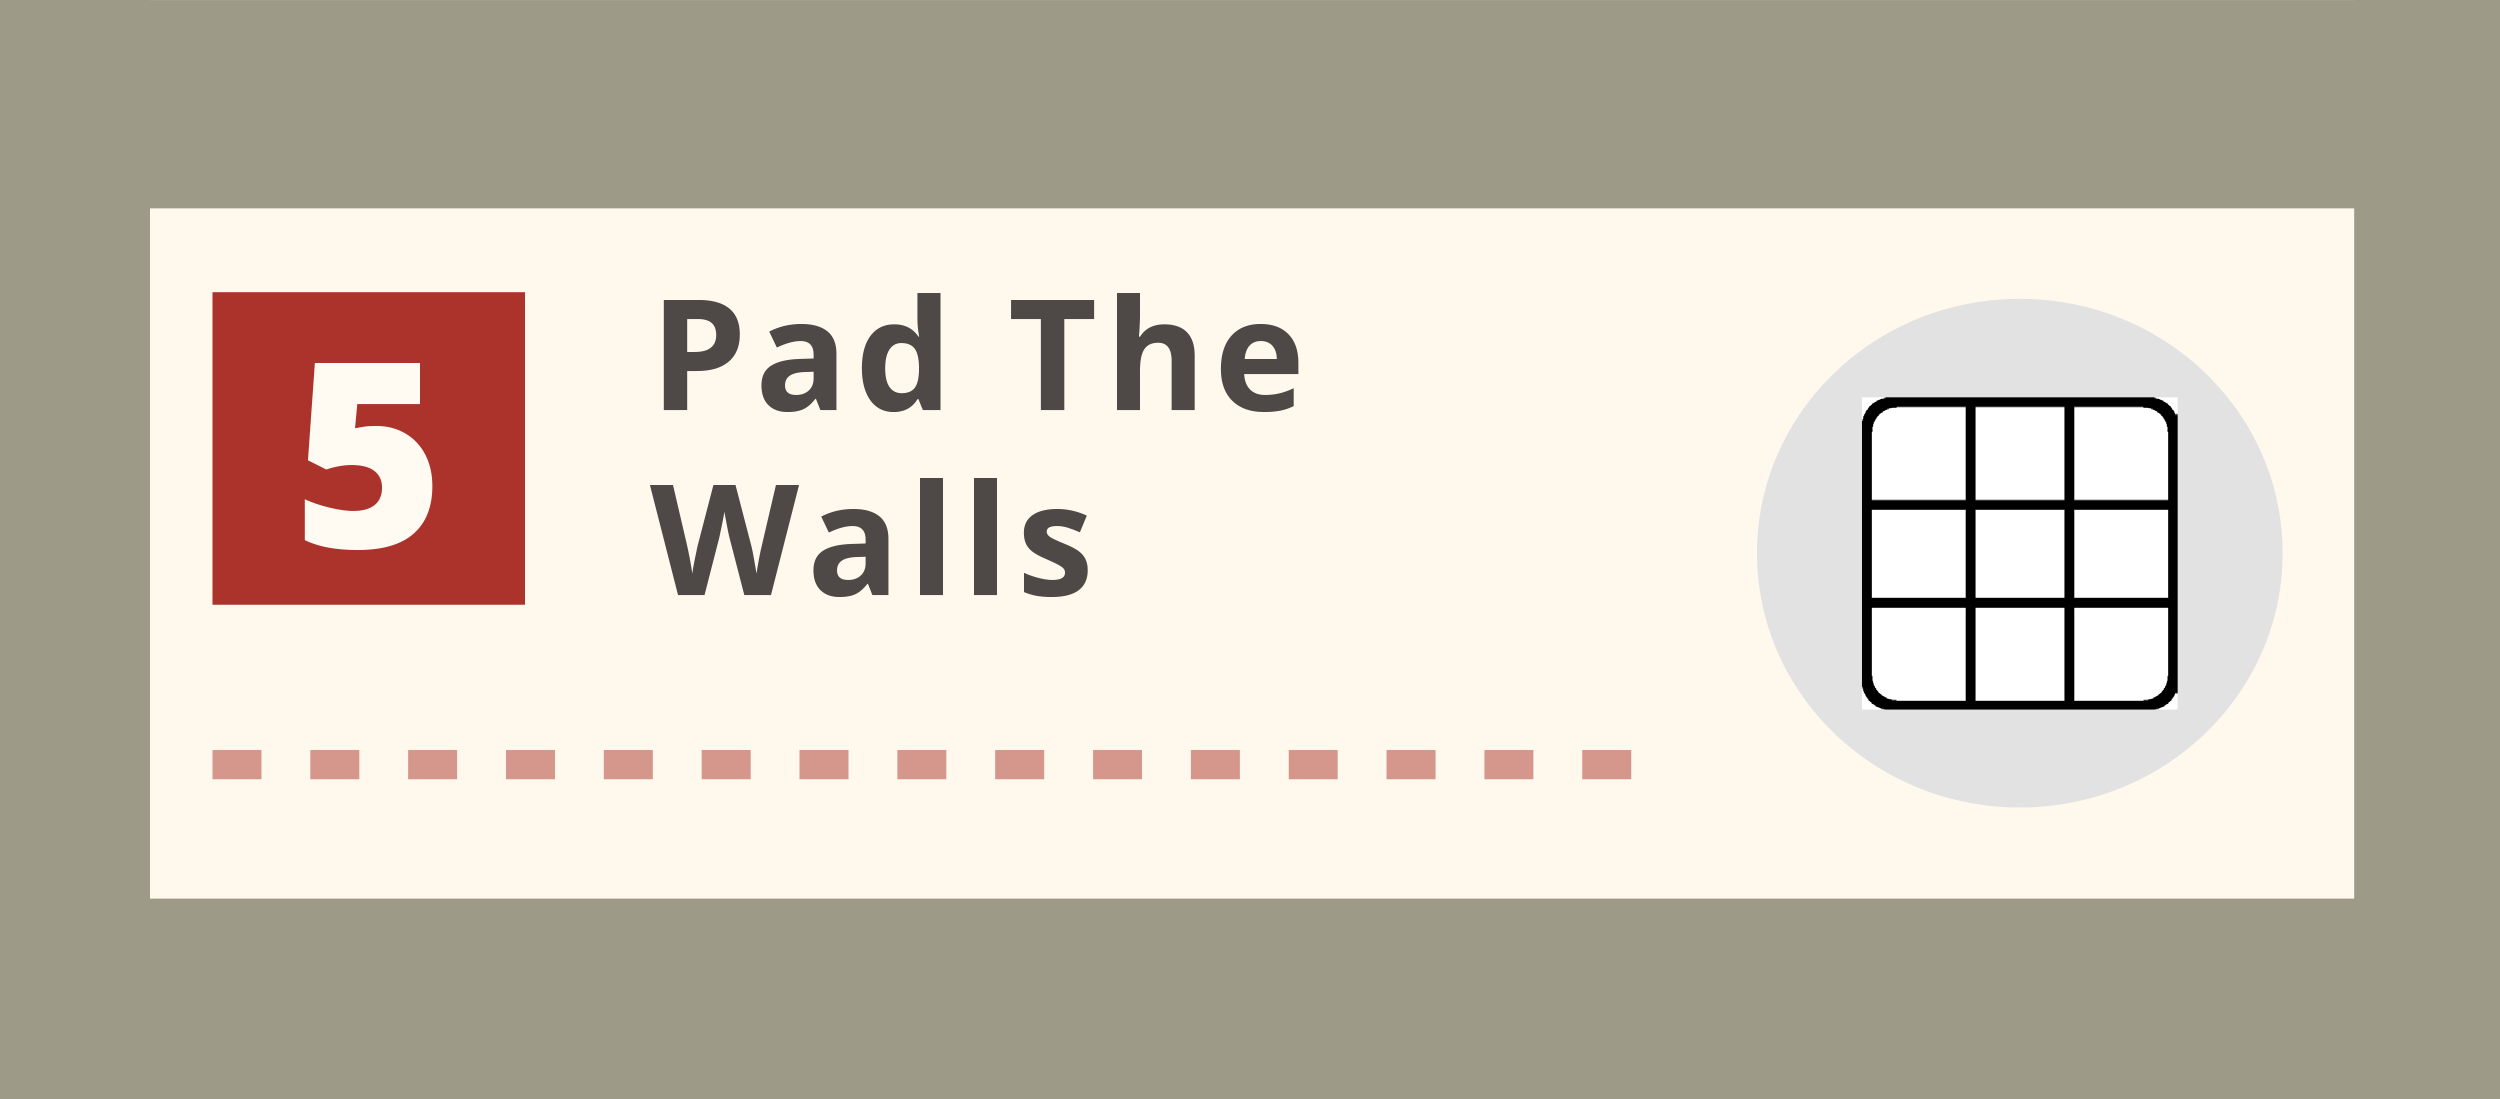 Pad the Walls